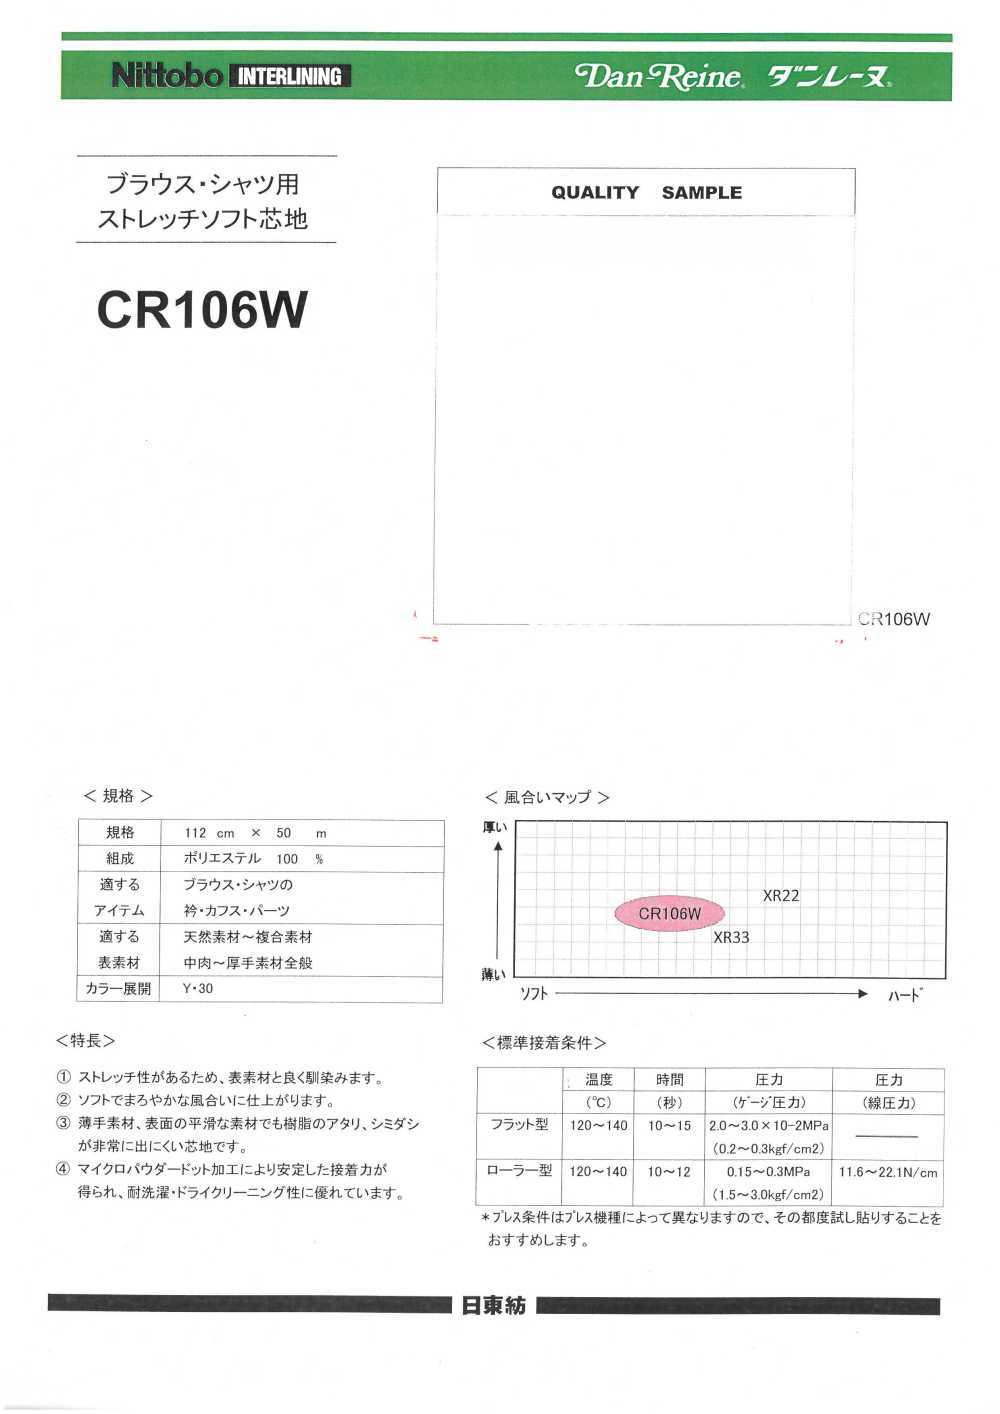 CR106W 블라우스 셔츠용 스트레치 소프트 심지 닛토보 (닛토보인터라이닝)